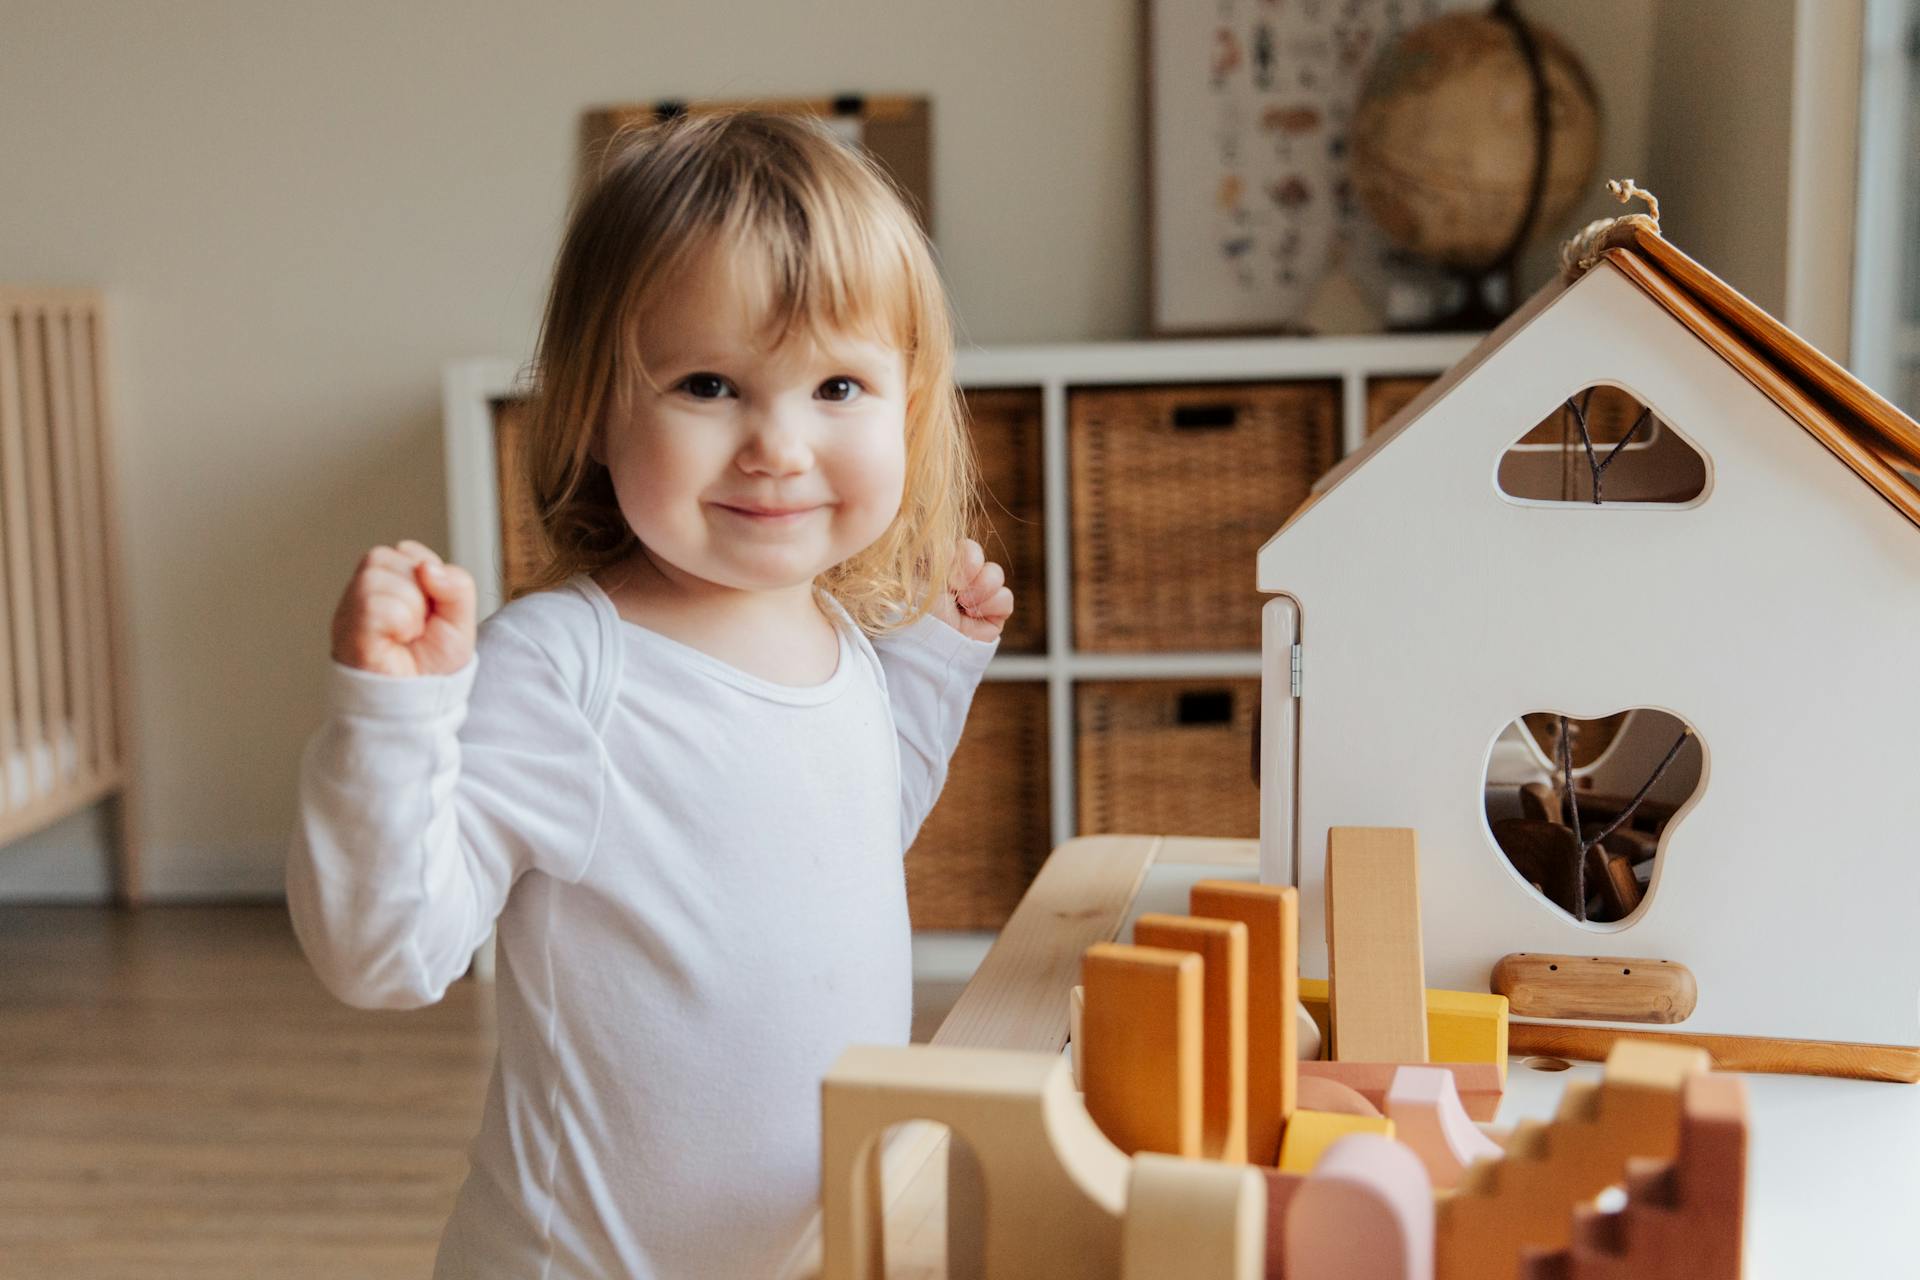 Une petite fille jouant avec ses jouets | Source : Pexels